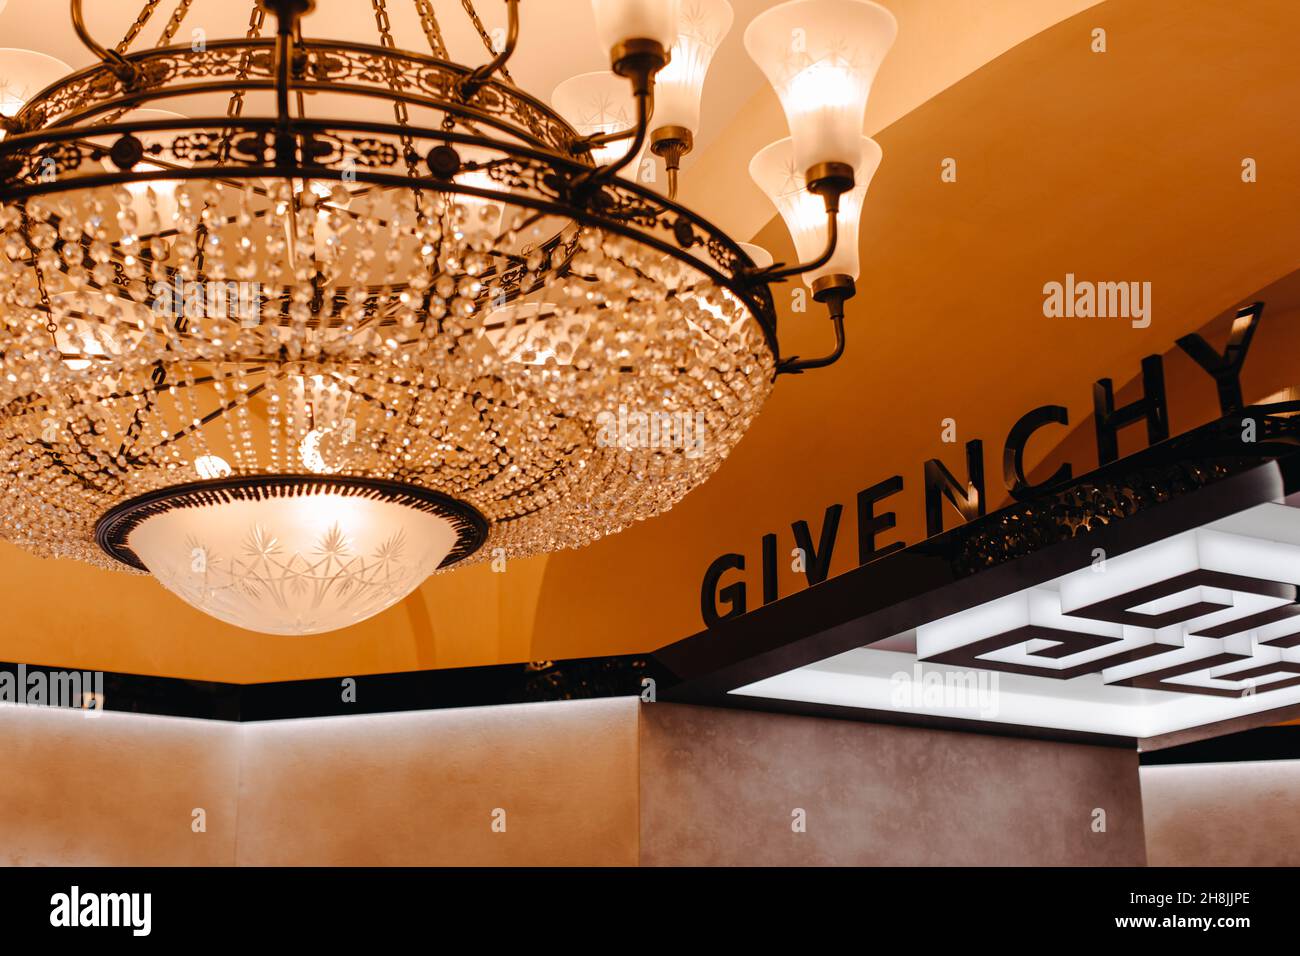 Givenchy negozio di lusso. Casa francese di moda e profumo, che ospita il marchio di haute couture abbigliamento, accessori, cosmetici. Luce d'oro del grido reale Foto Stock